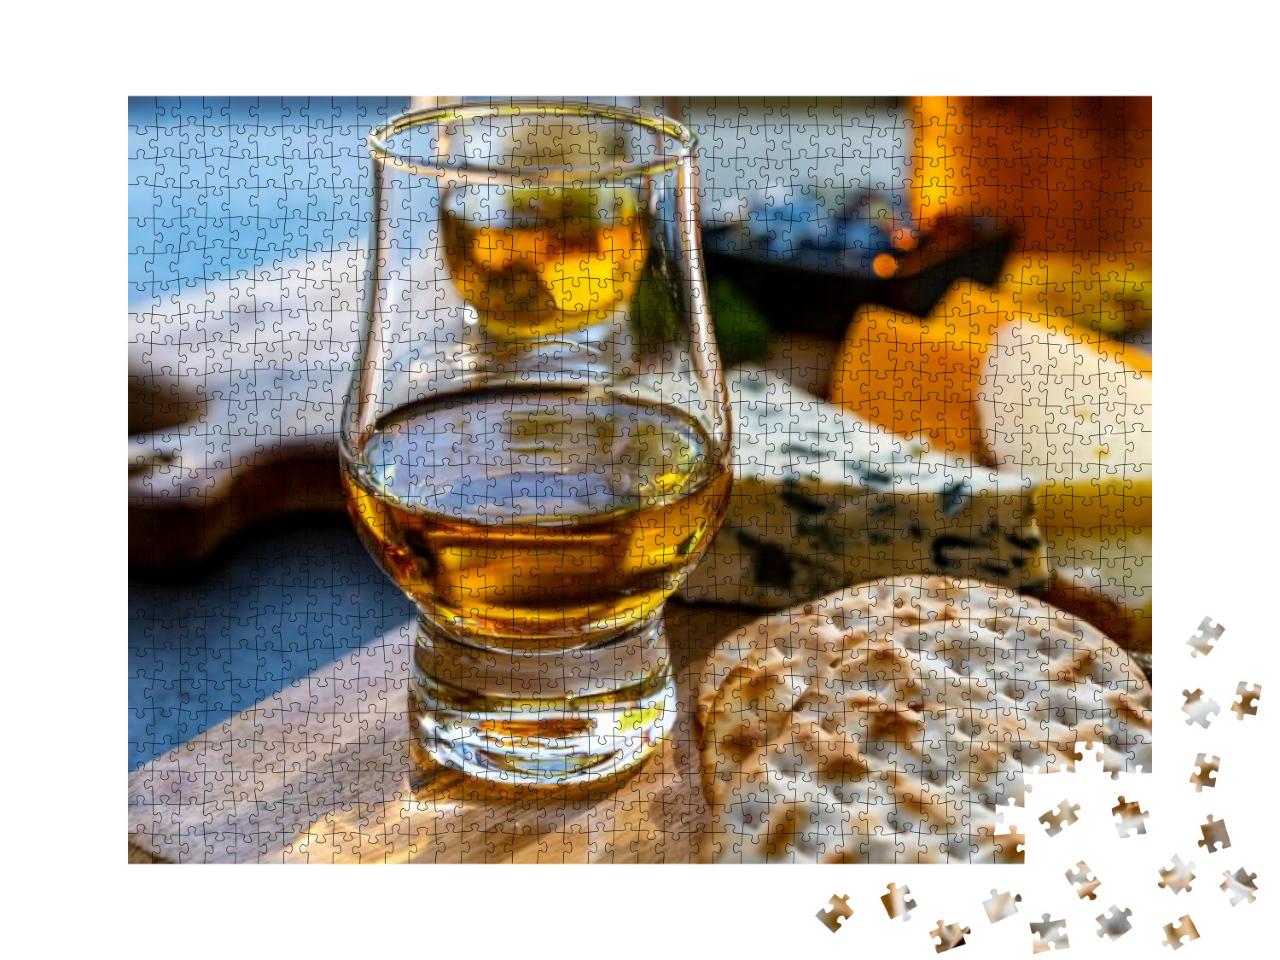 Puzzle 1000 Teile „Whiskey-Käse-Paarung, Verkostung von Whiskey und Käse“